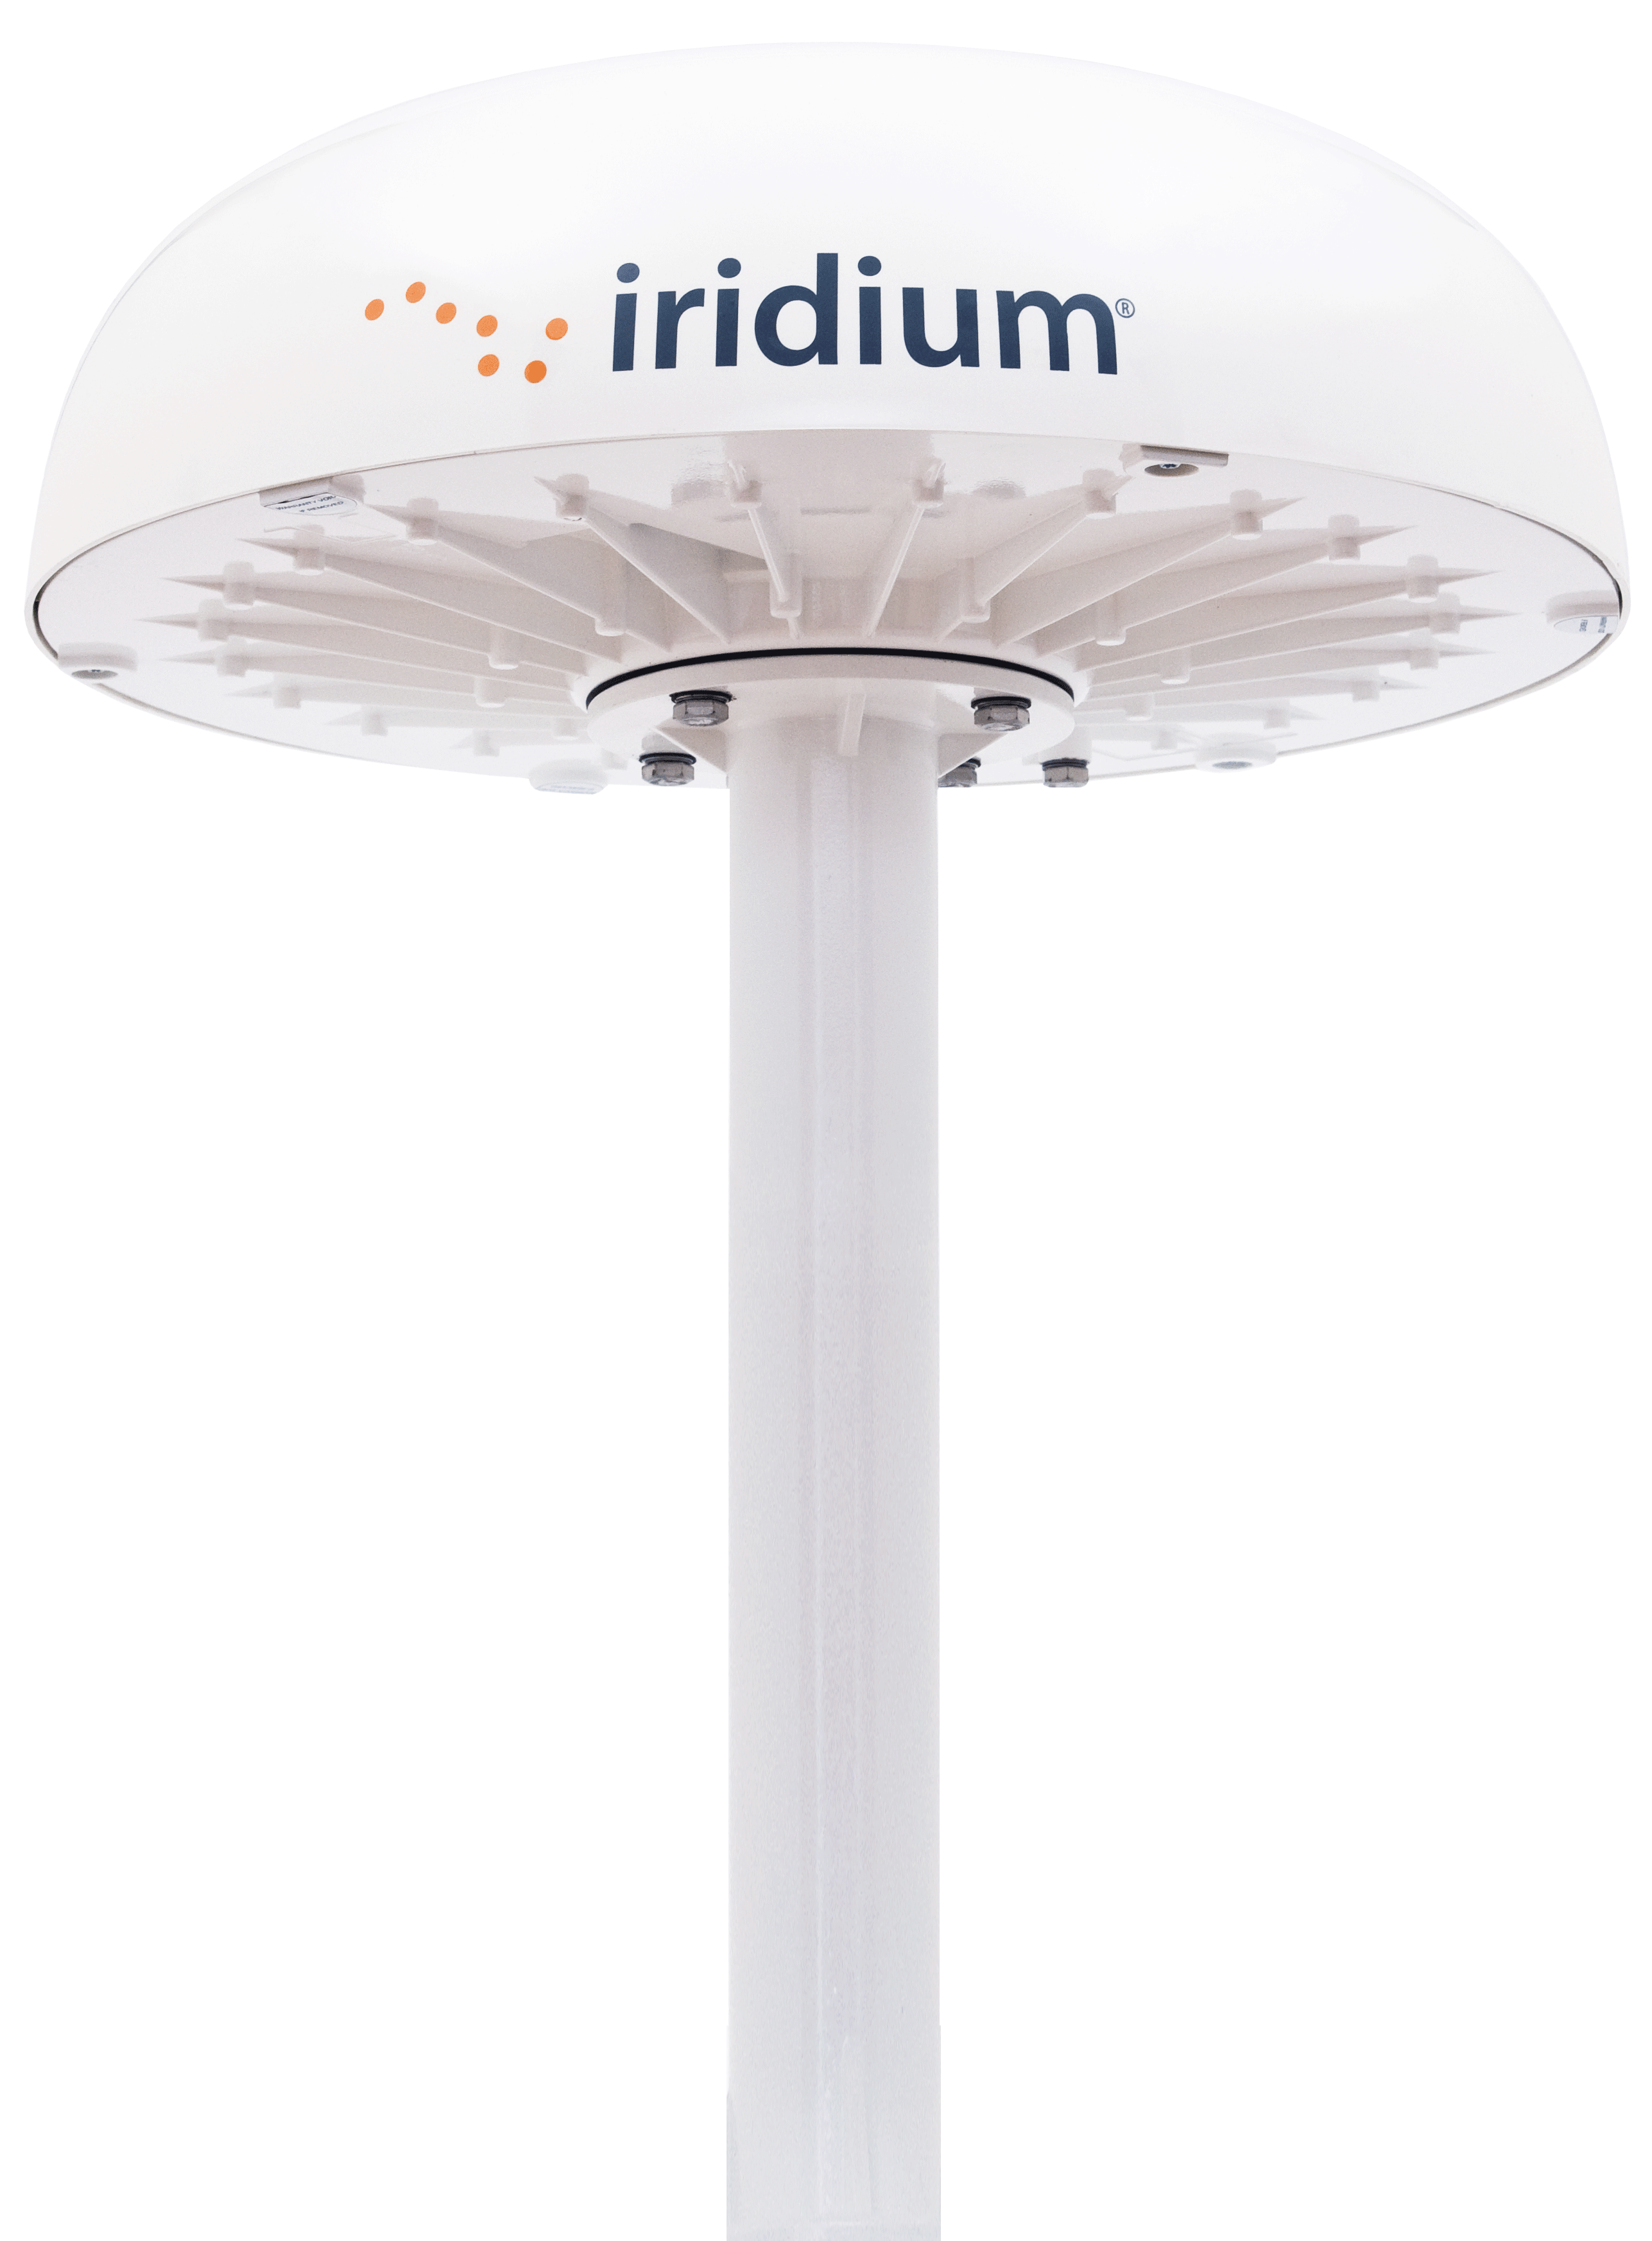 Iridium Pilot Land Station Product Image